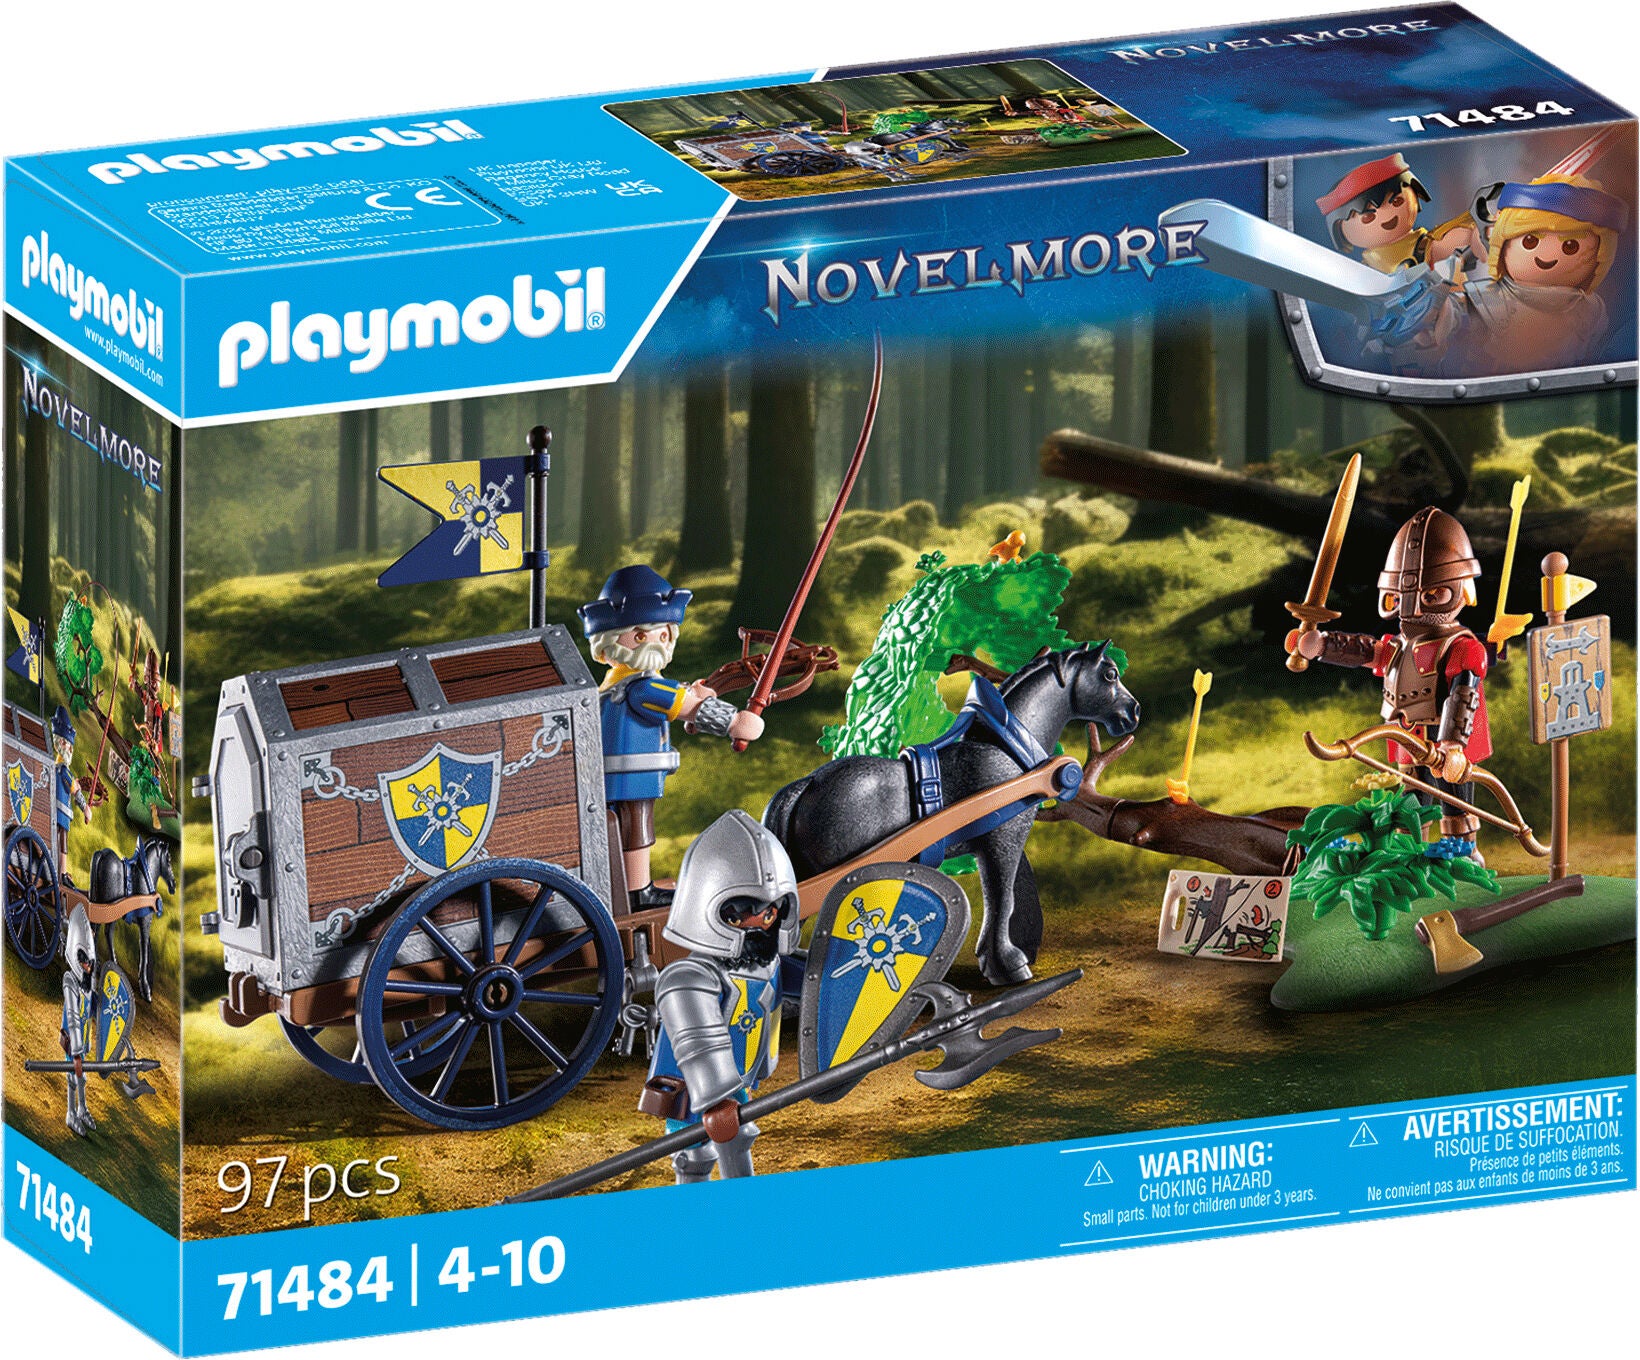 Playmobil 71484 Novelmore Baukasten Überfall auf Transportwagen von Playmobil